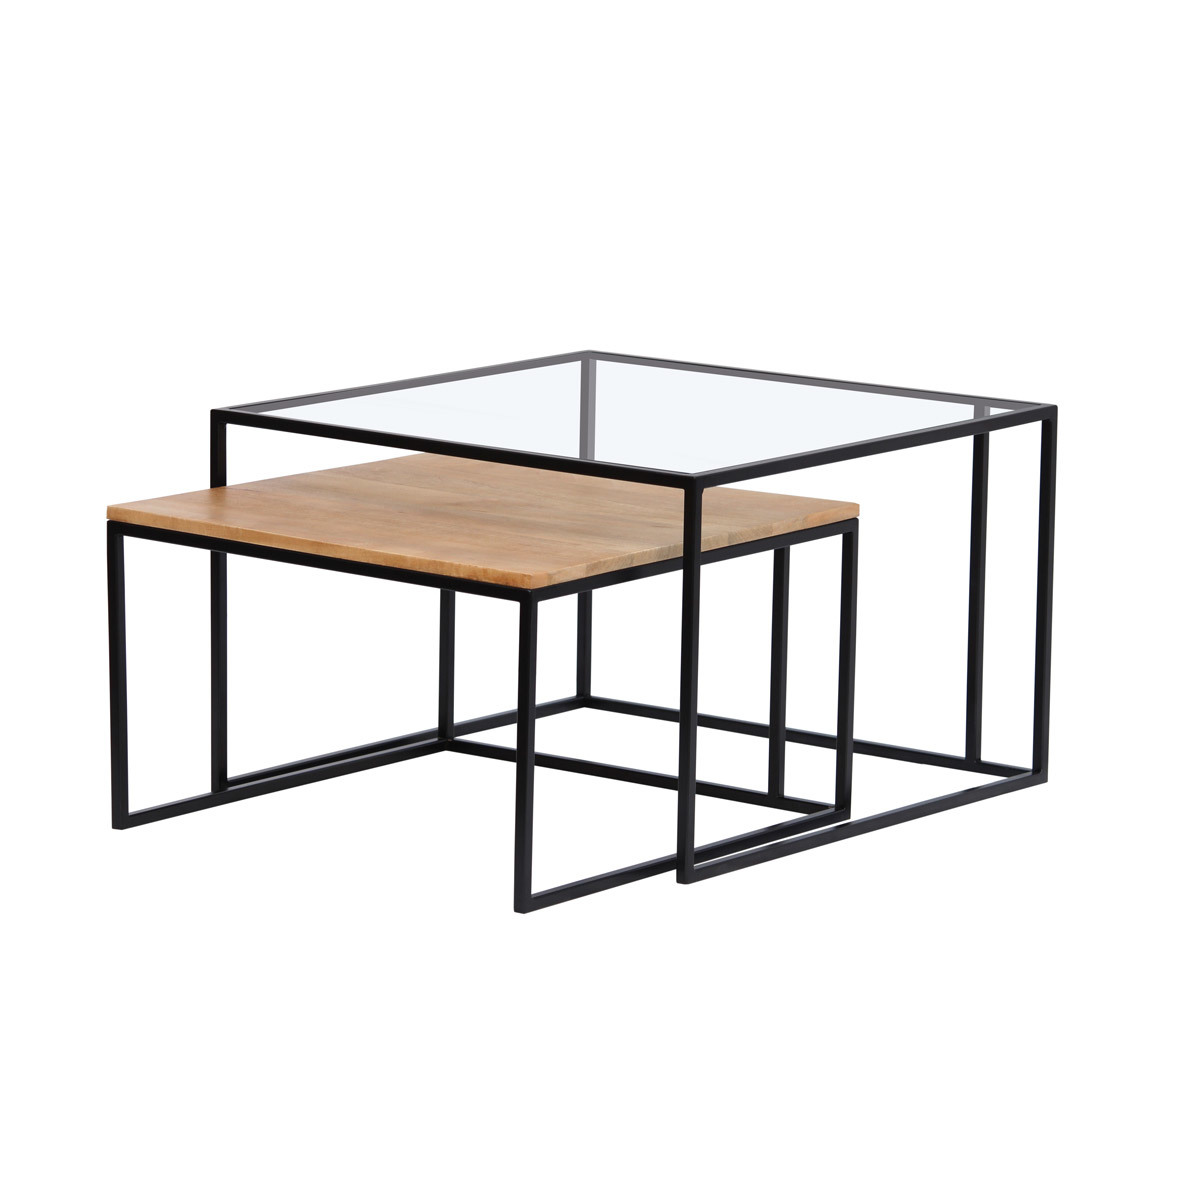 Tables basses gigognes carrées verre trempé, bois clair manguier massif et métal noir (lot de 2) TAHL vue1